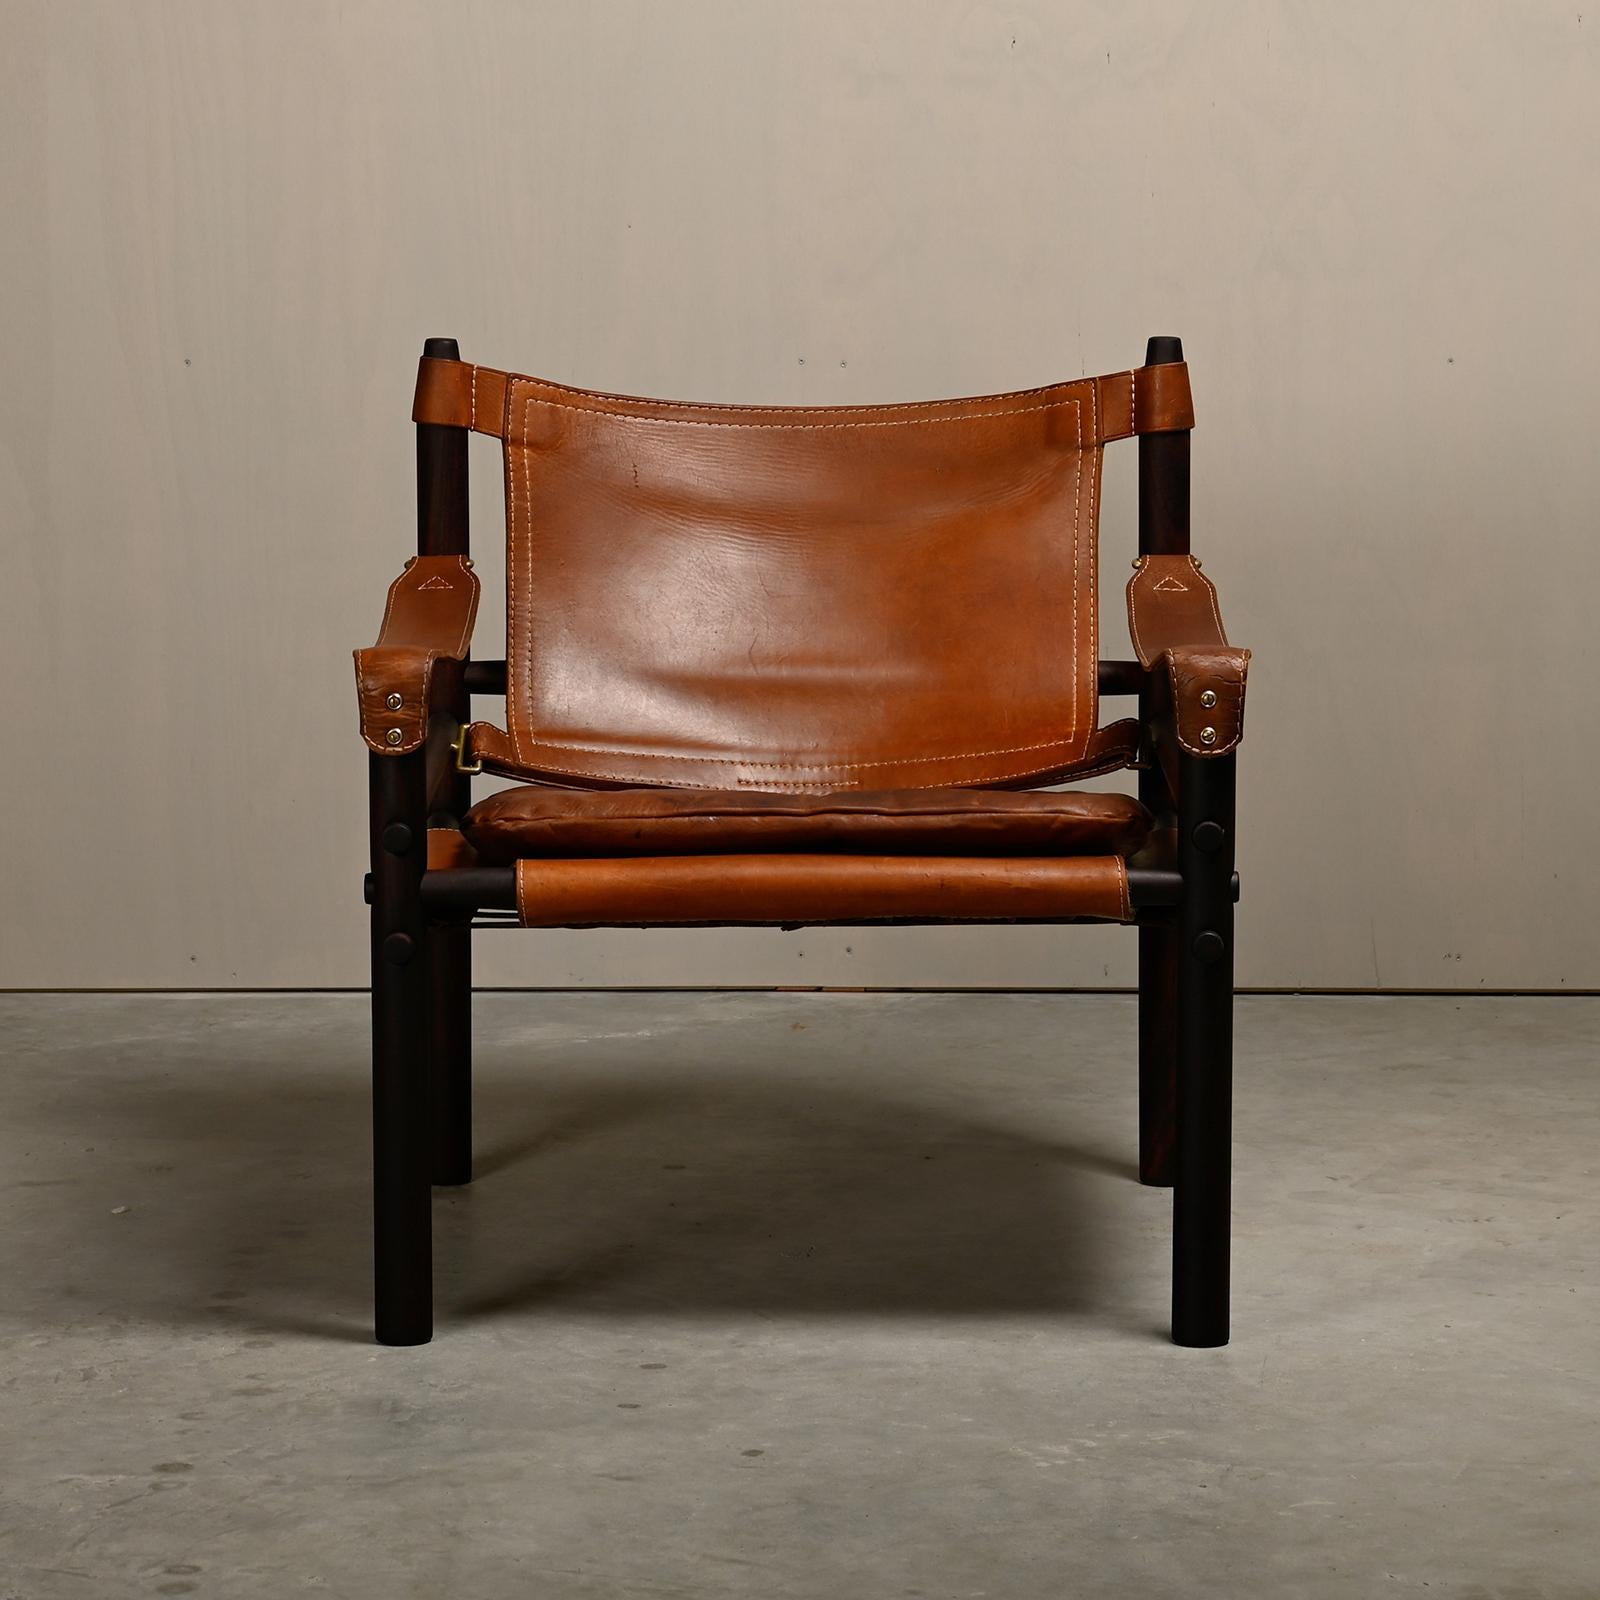 Scandinave moderne Chaise longue Sirocco Safari d'Arne Norell en bois et cuir brun foncé, Wood Wood. en vente